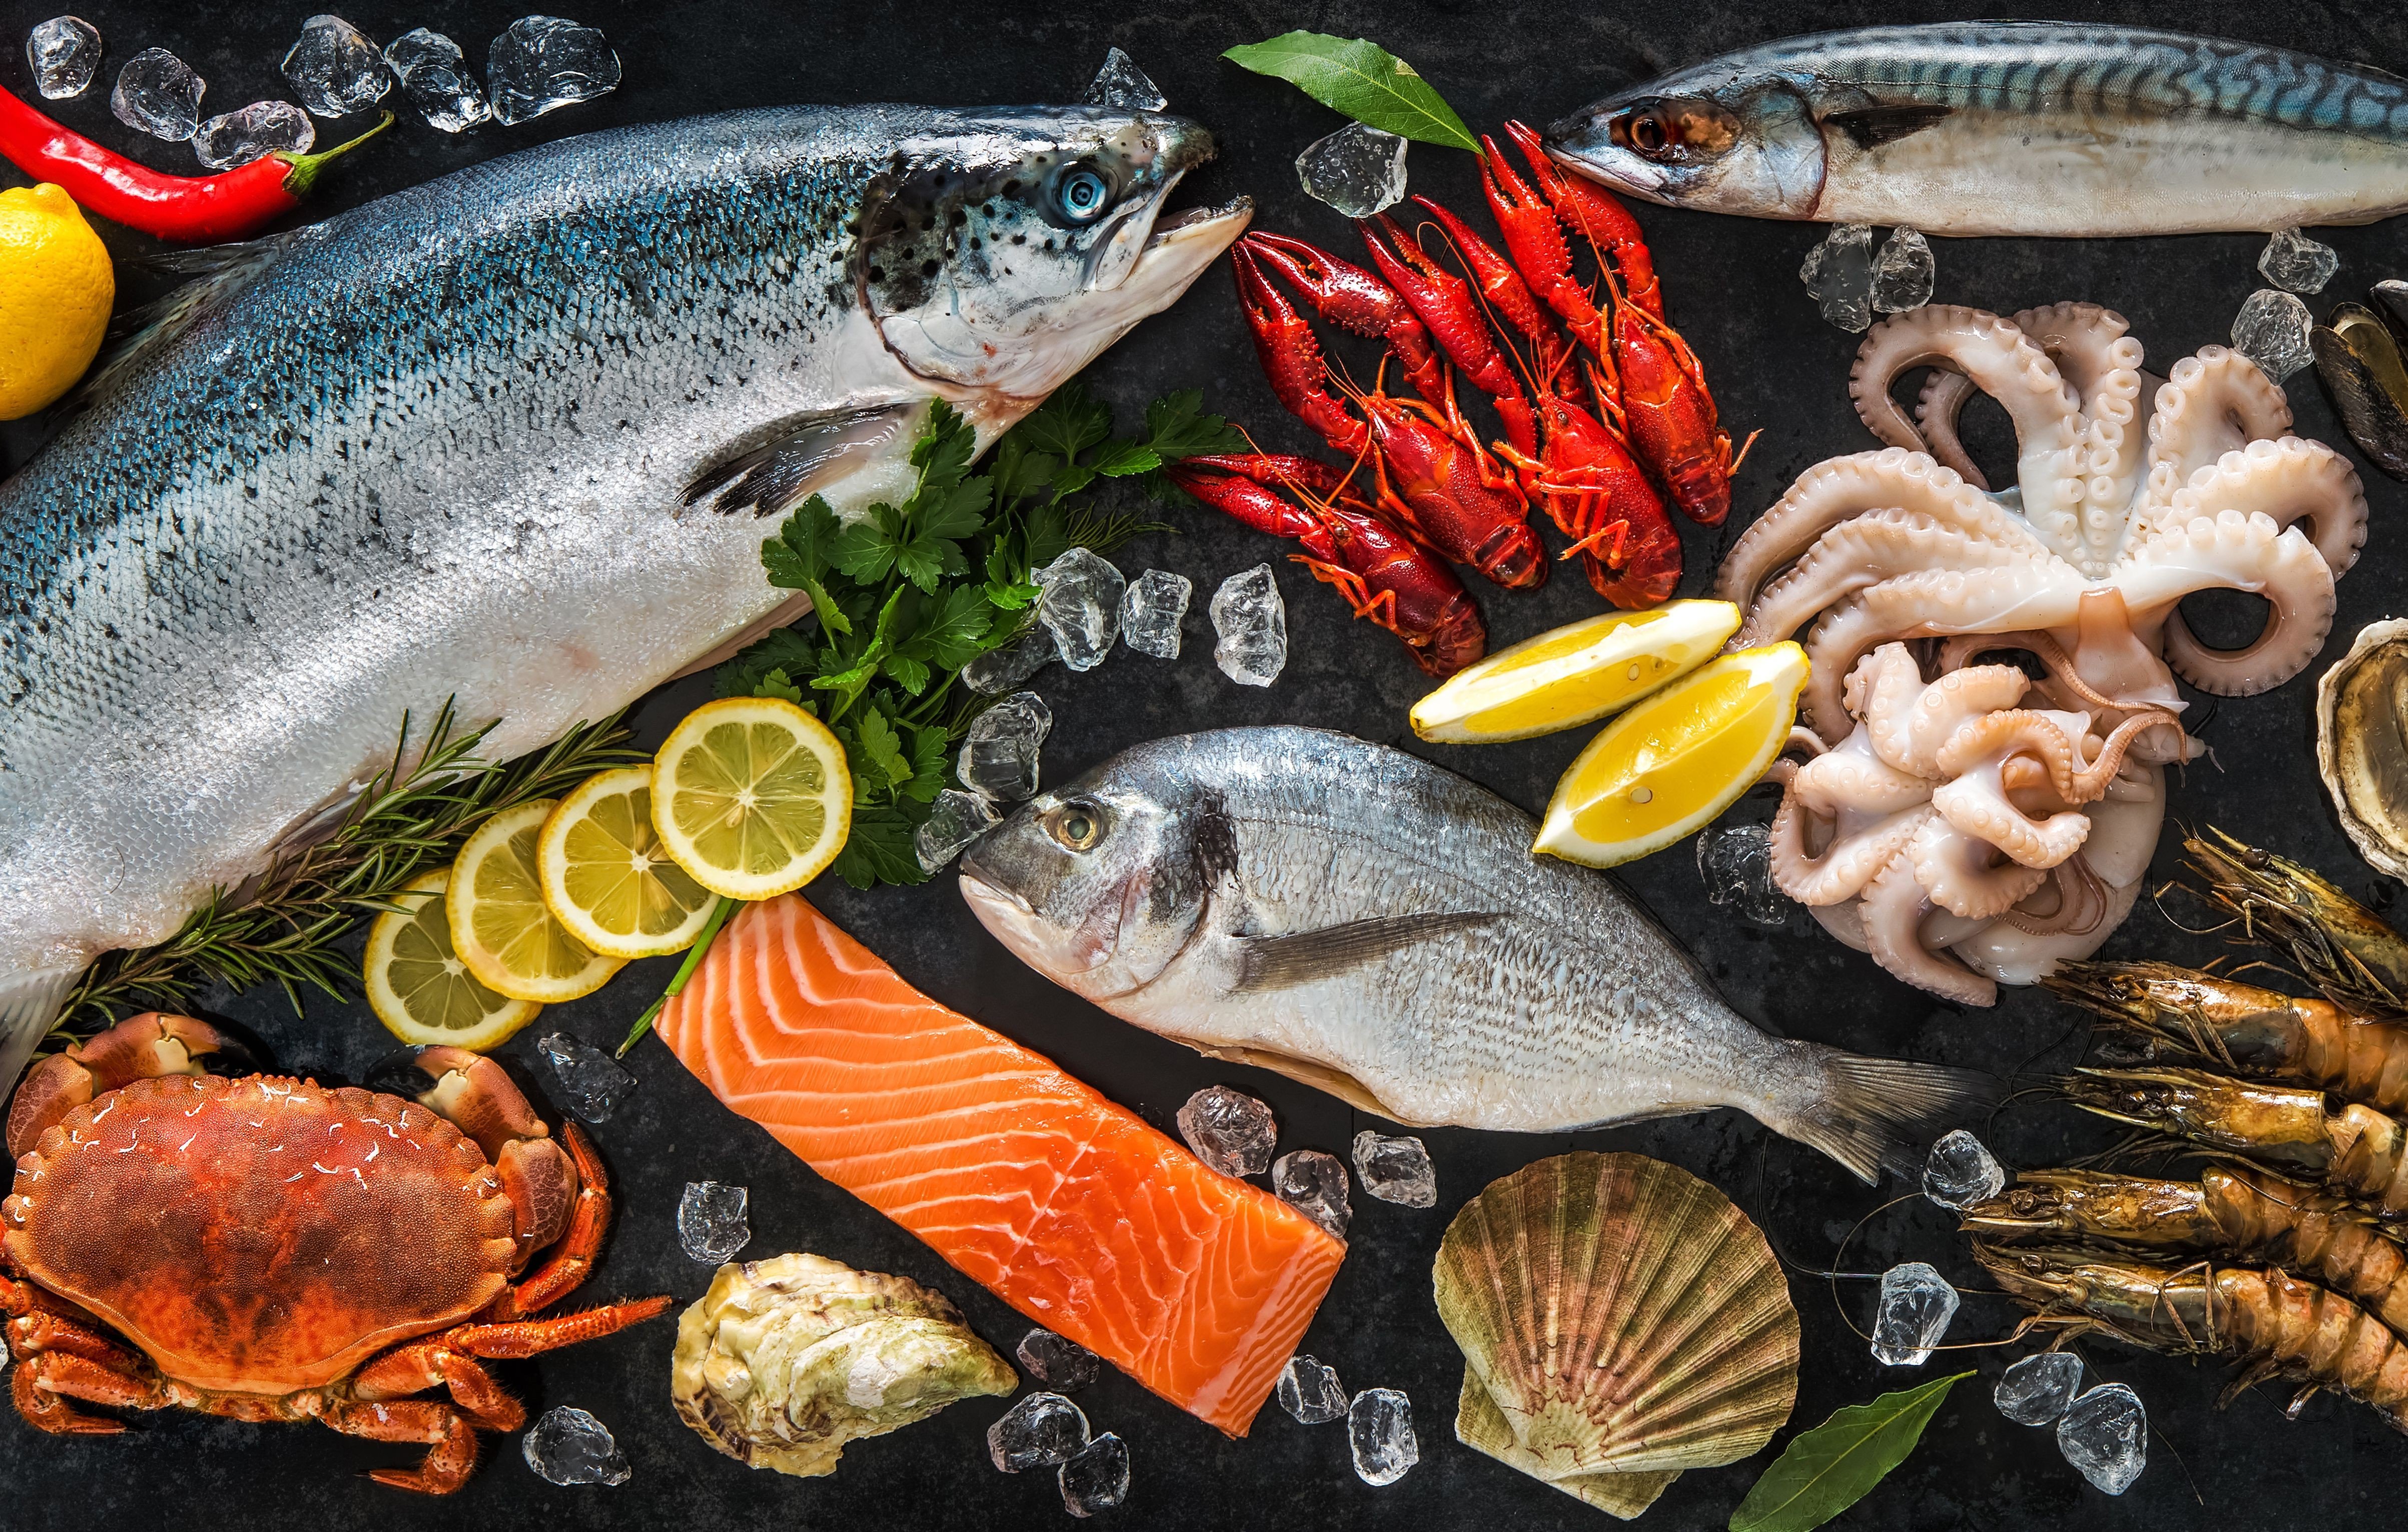 Fish product. Рыба и морепродукты. Рыба и Рыбная продукция. Рыба в ассортименте. Рыбные деликатесы.